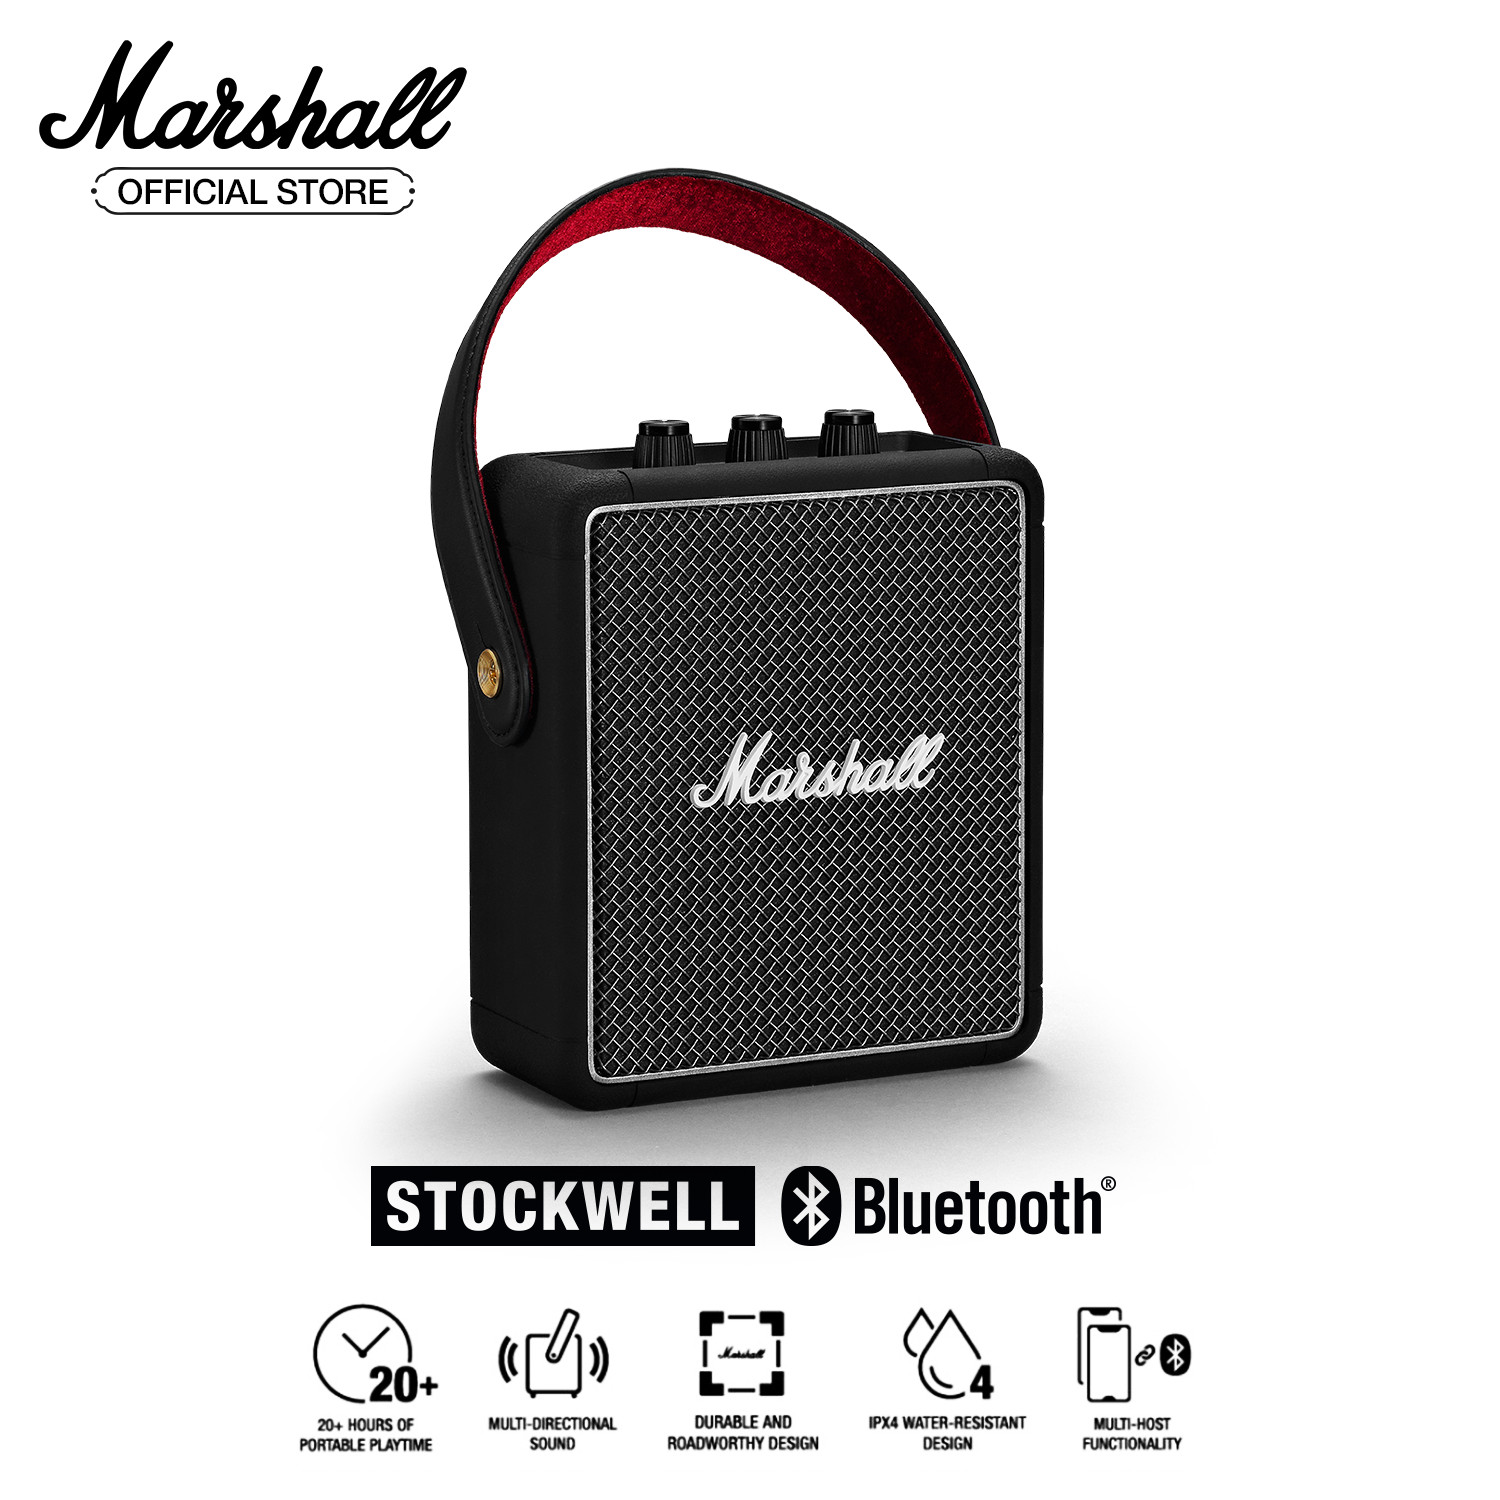 [Hàng chính hãng] Loa Marshall Stockwell 2 Portable + 20 hours battery life - 1 năm bảo hành (Đen)